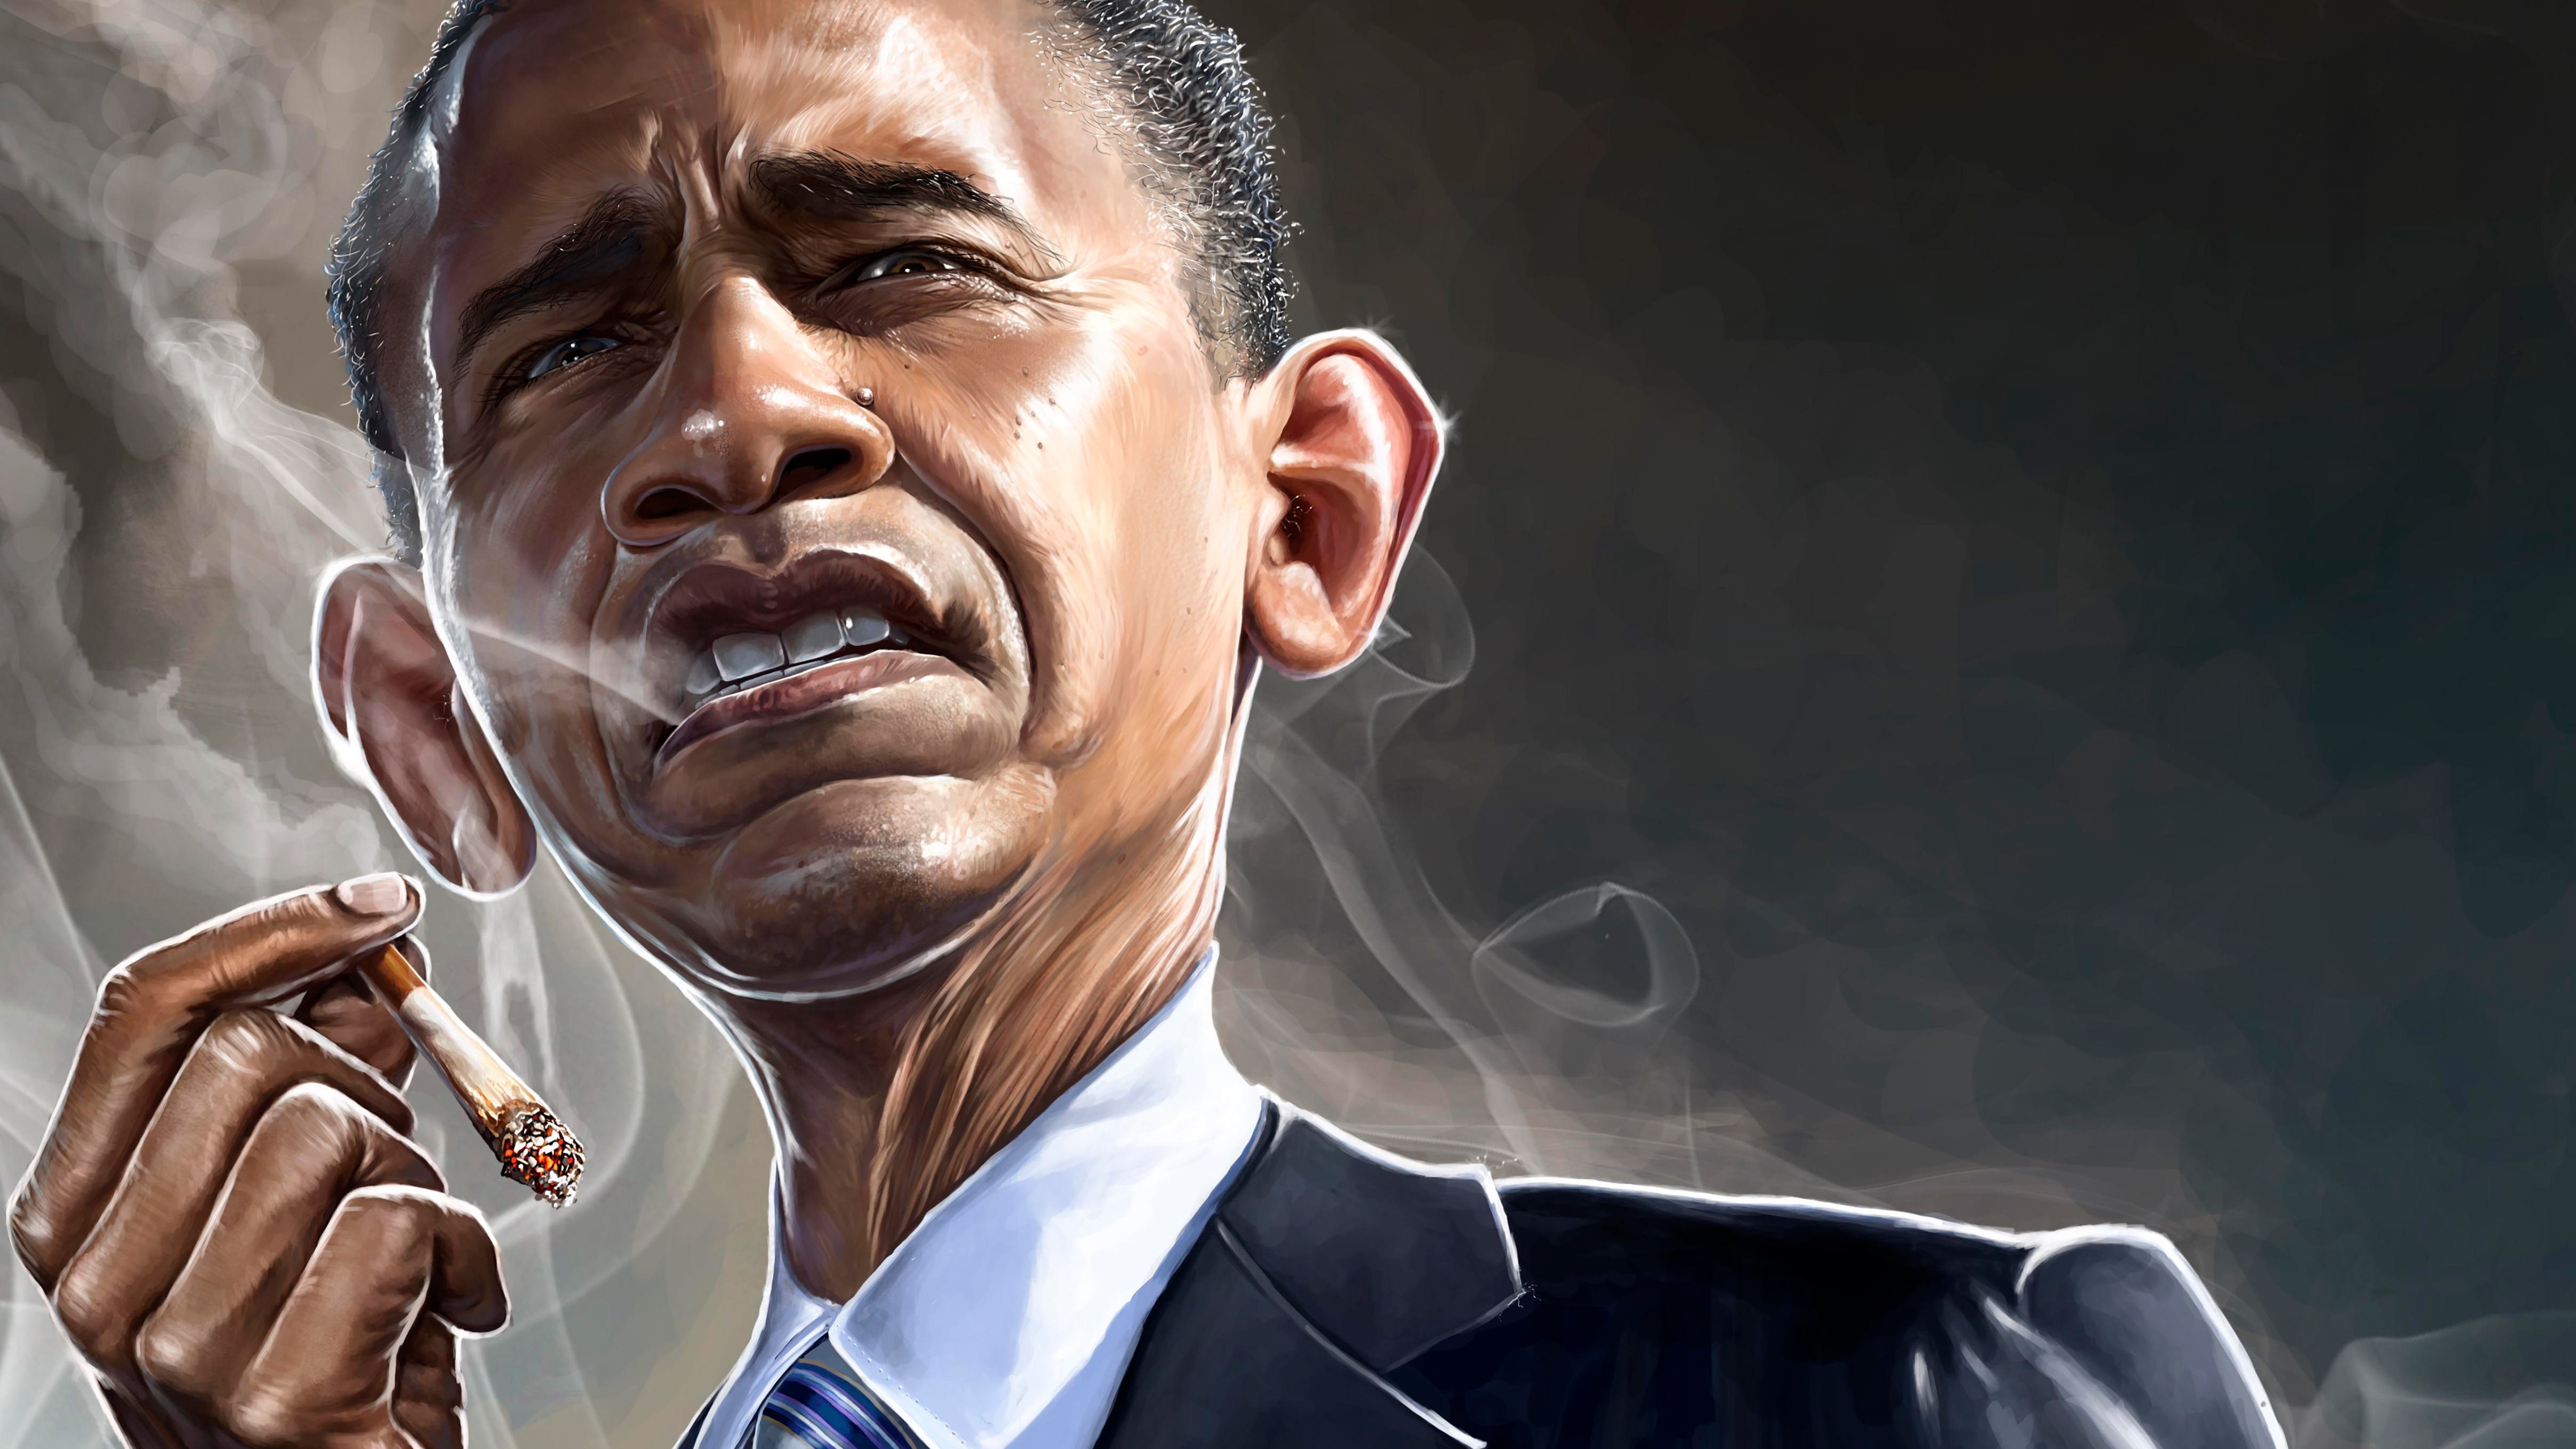 Barack Obama 4k Ultra HD Wallpaper Background Image